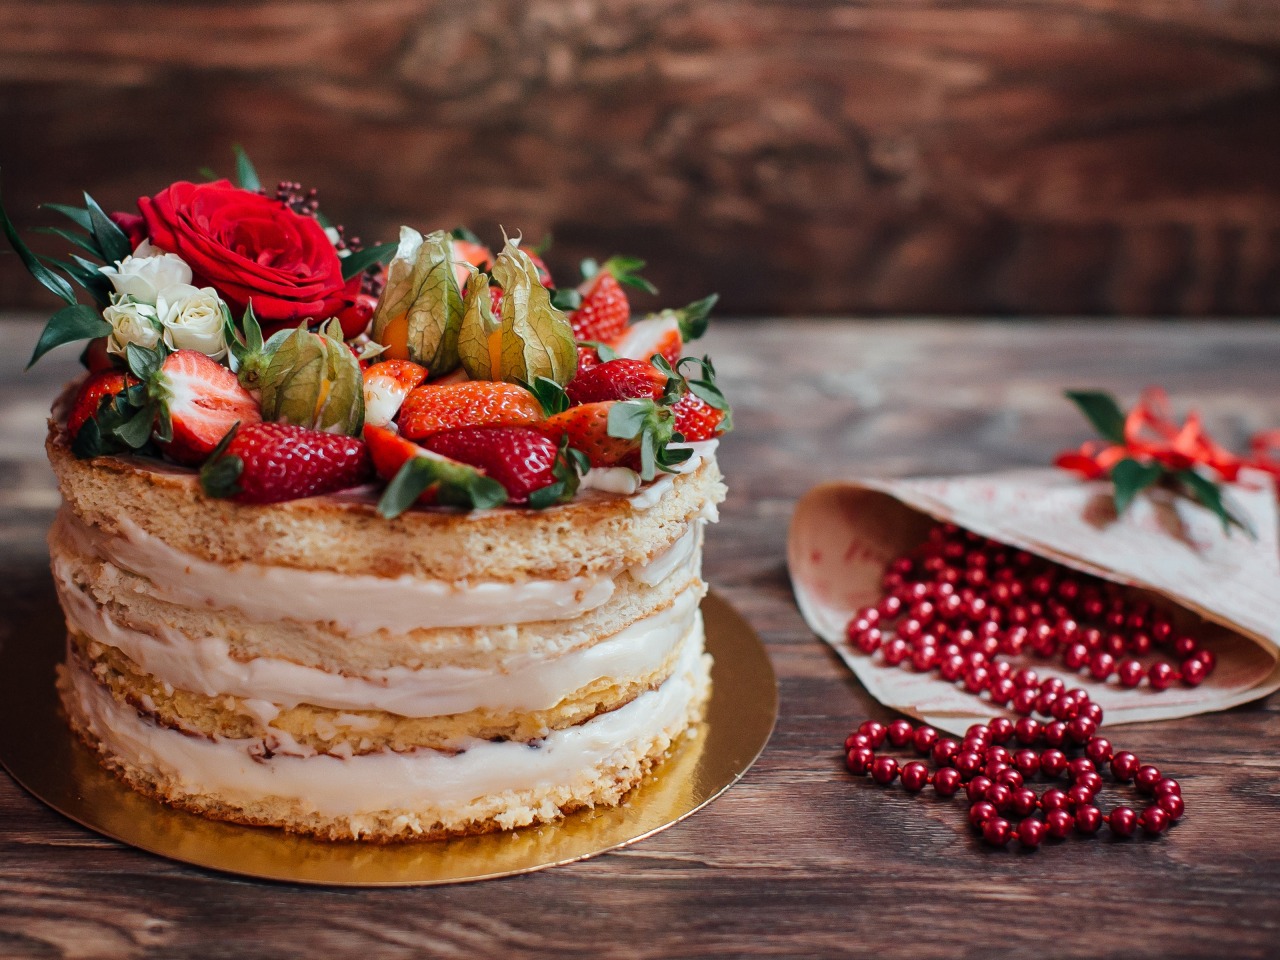 iagody-tort-desert-berries-cake-dessert.jpg